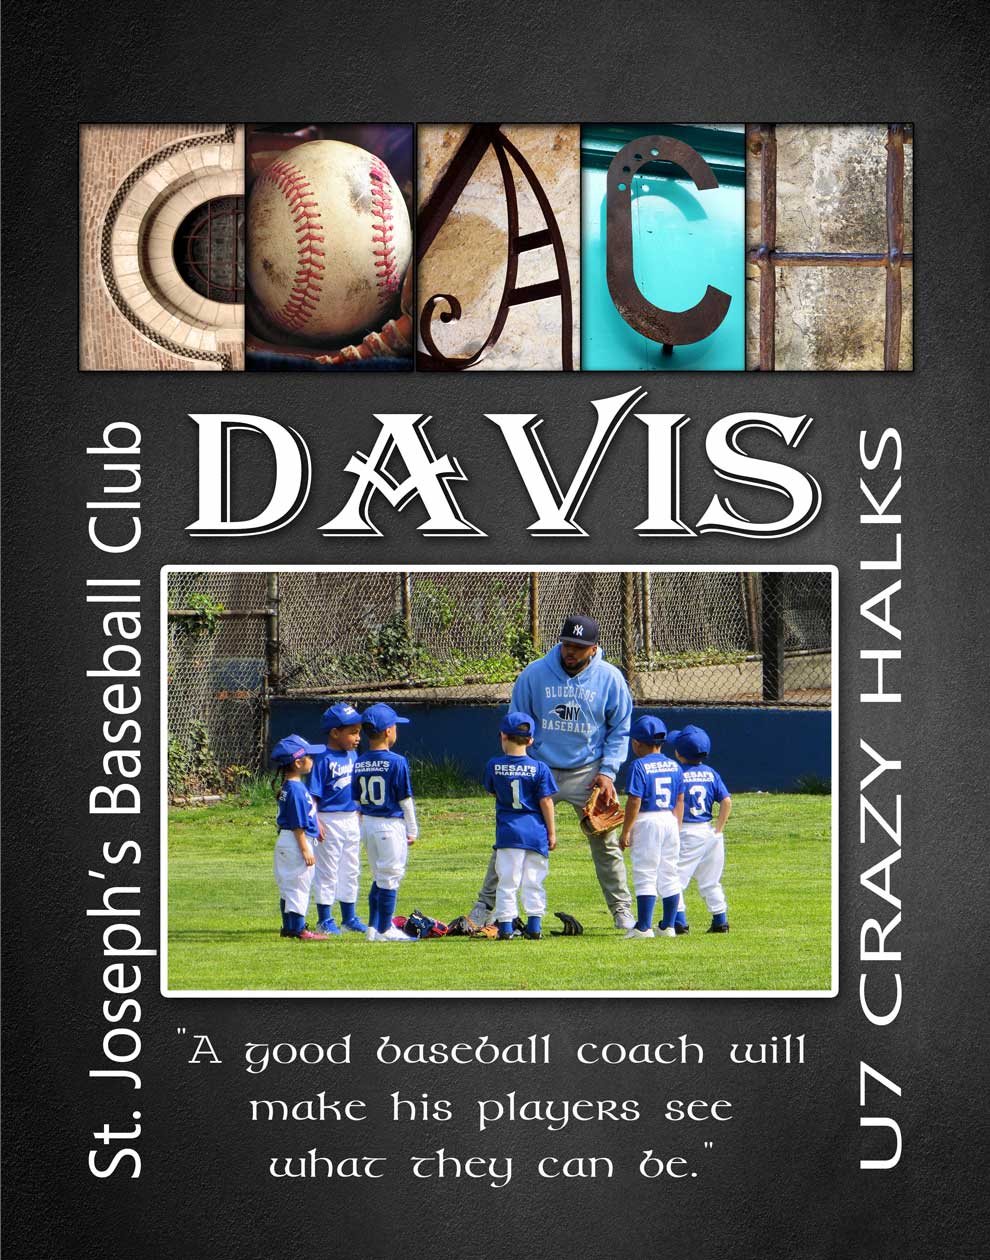 Baseball Coach Thank You Gift End of Season Award Plaque 